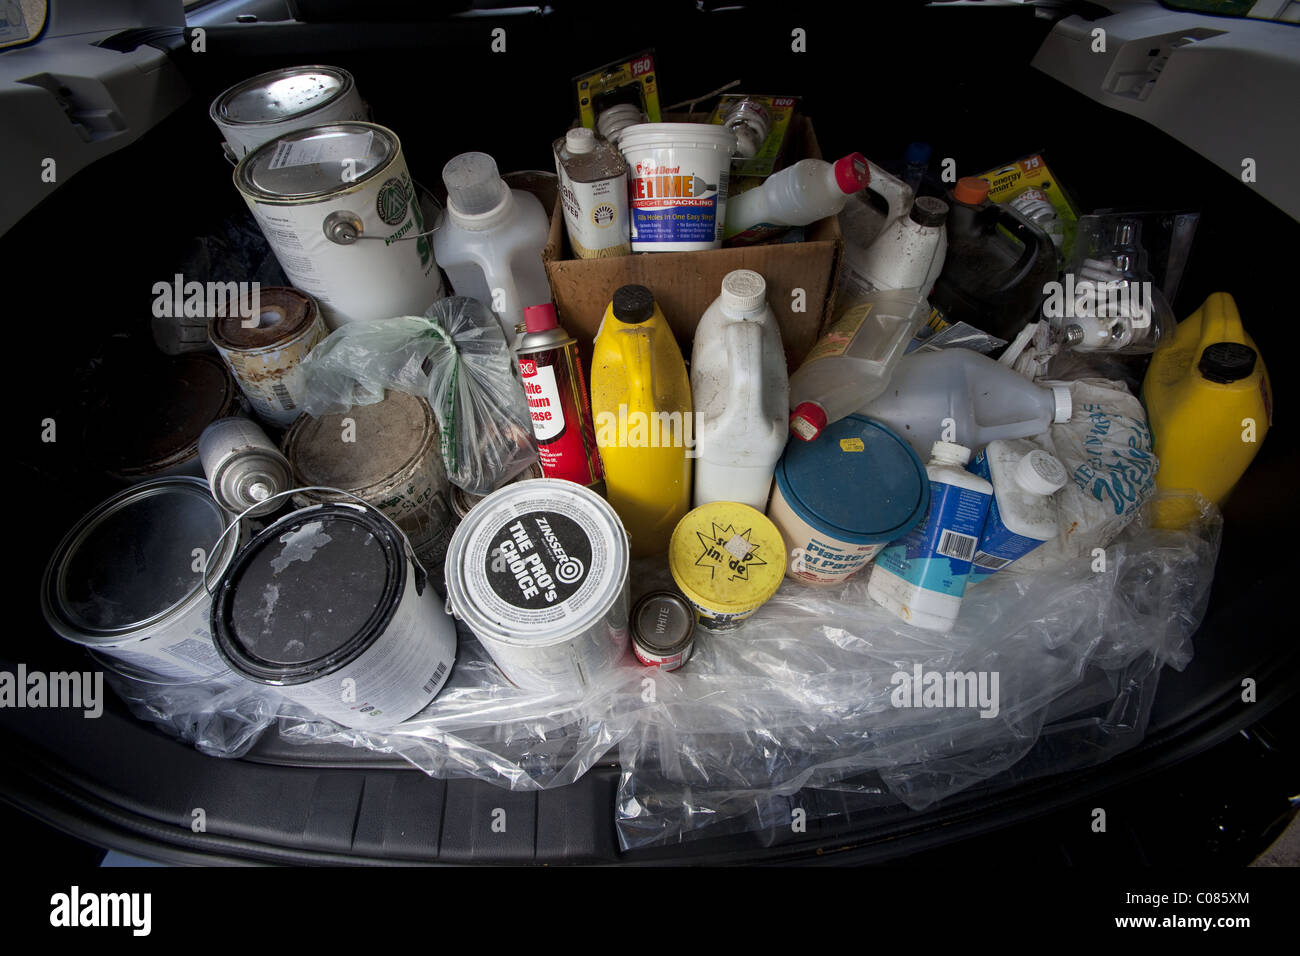 Les conteneurs de déchets toxiques et dangereux produits chimiques ménagers prises pour les recycleurs désignés Banque D'Images